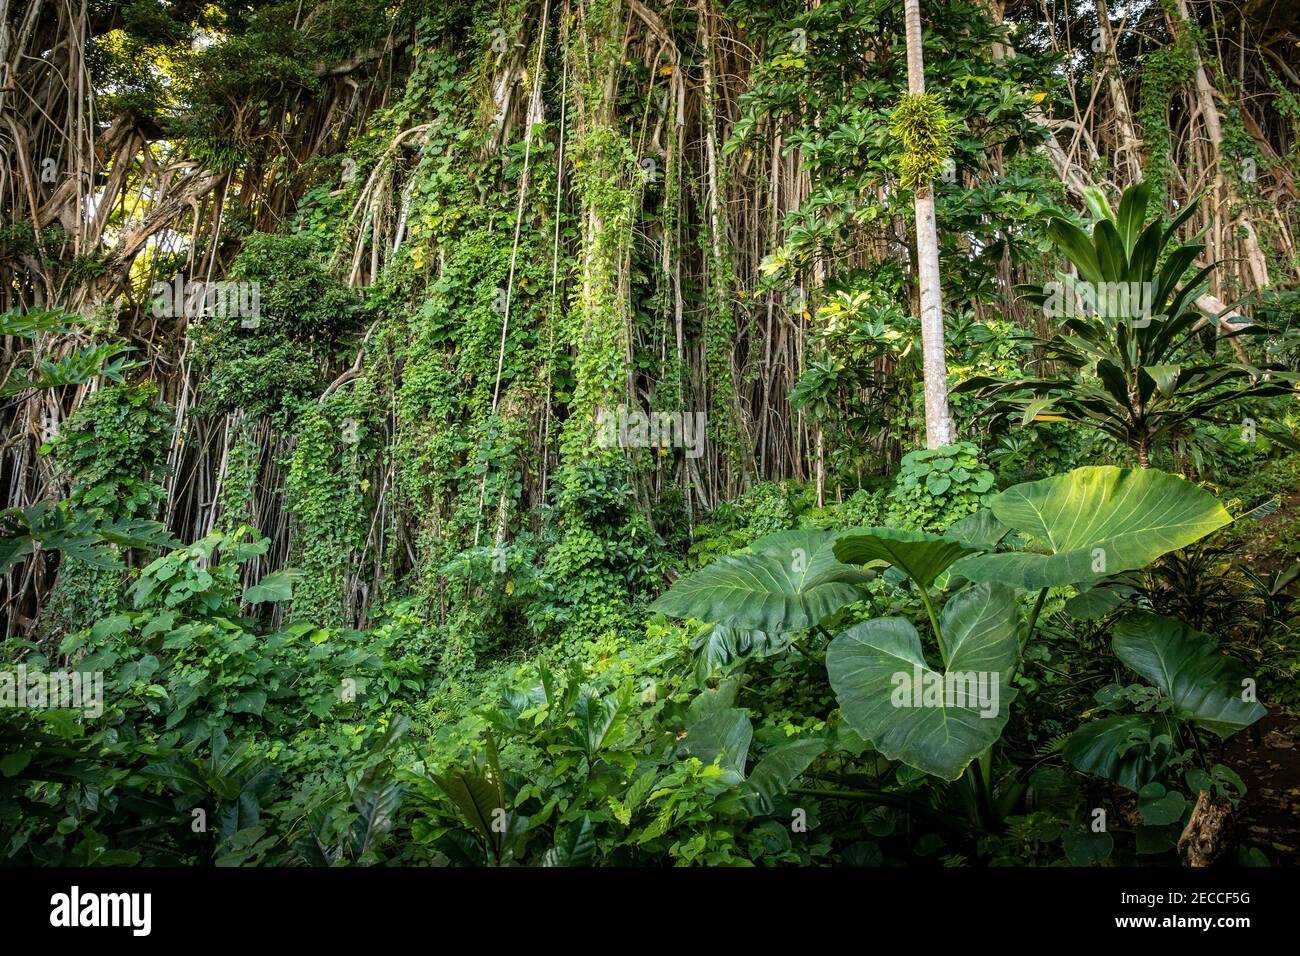 Explorez la beauté luxuriante de la forêt tropicale intacte du Vanuatu, ornée de plantes vertes vibrantes comme les lianes, les bananiers, l'alocasia et les palmiers Banque D'Images